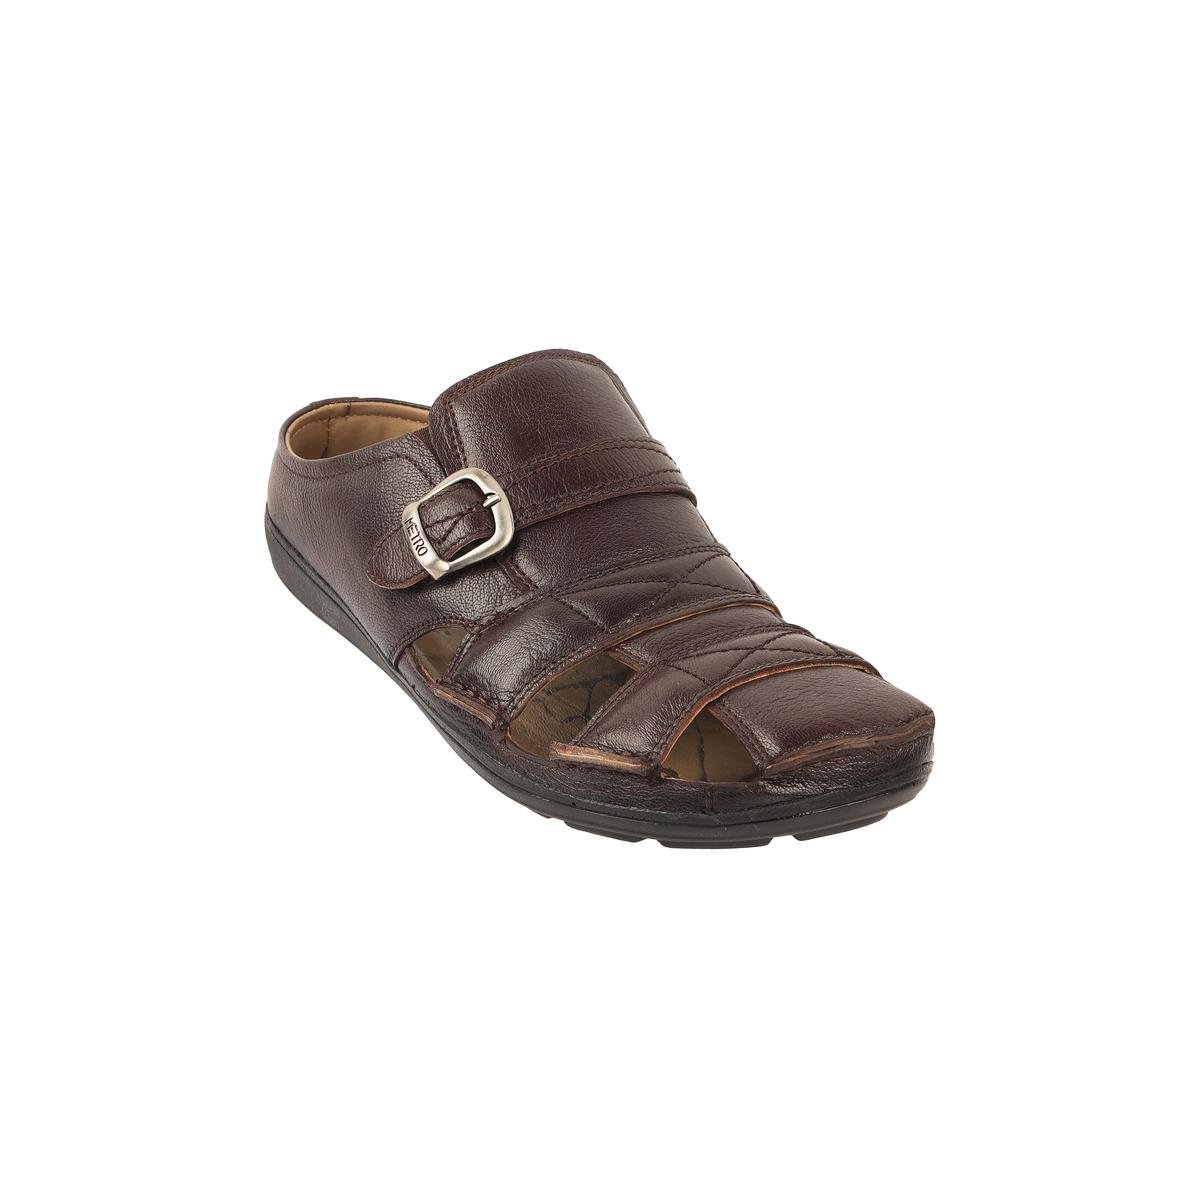 Buy Men Brown Casual Slip Ons Online | SKU: 18-544-12-40-Metro Shoes